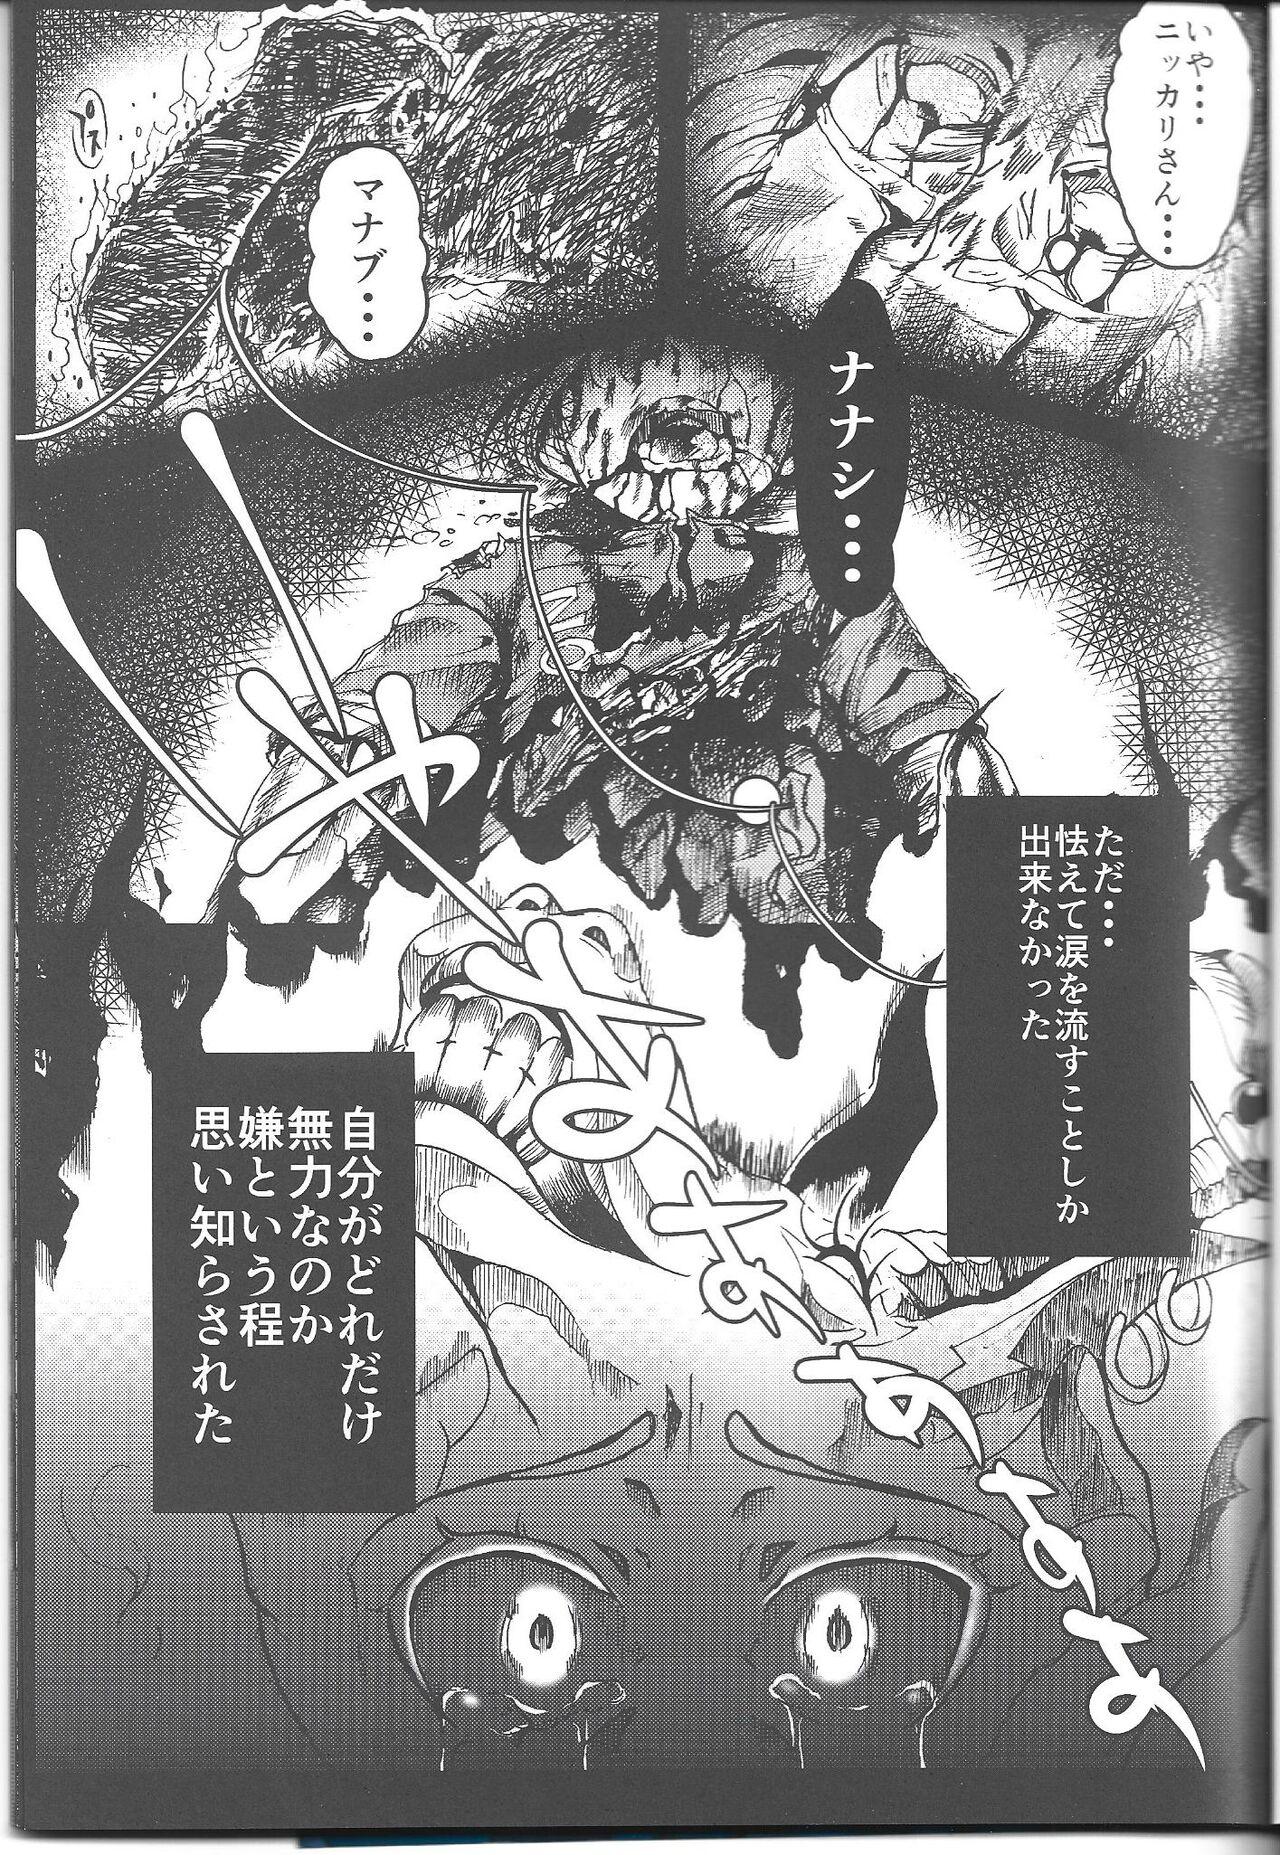 Twistys Ichininmae no Megami Zenpen - The Full Grown Goddess part 1 - Shin megami tensei Amigos - Page 2